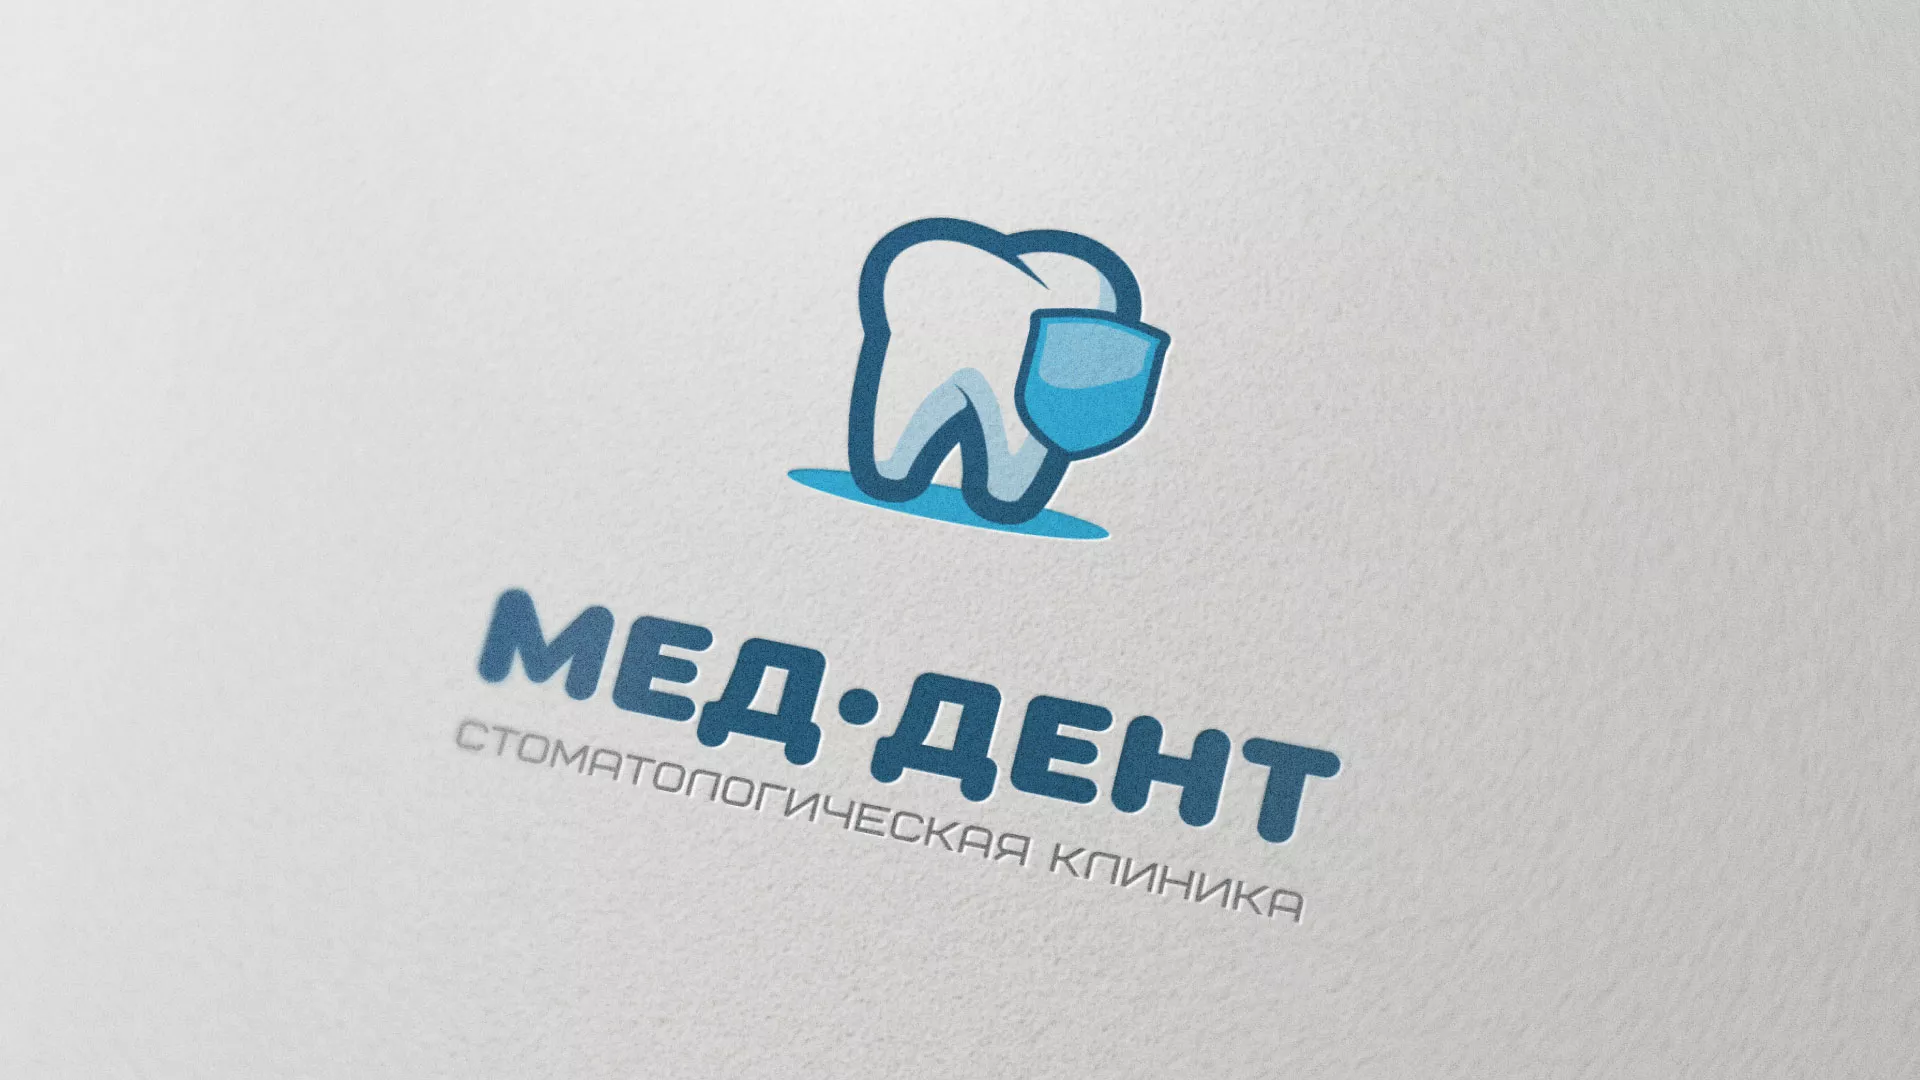 Разработка логотипа стоматологической клиники «МЕД-ДЕНТ» в Усть-Лабинске